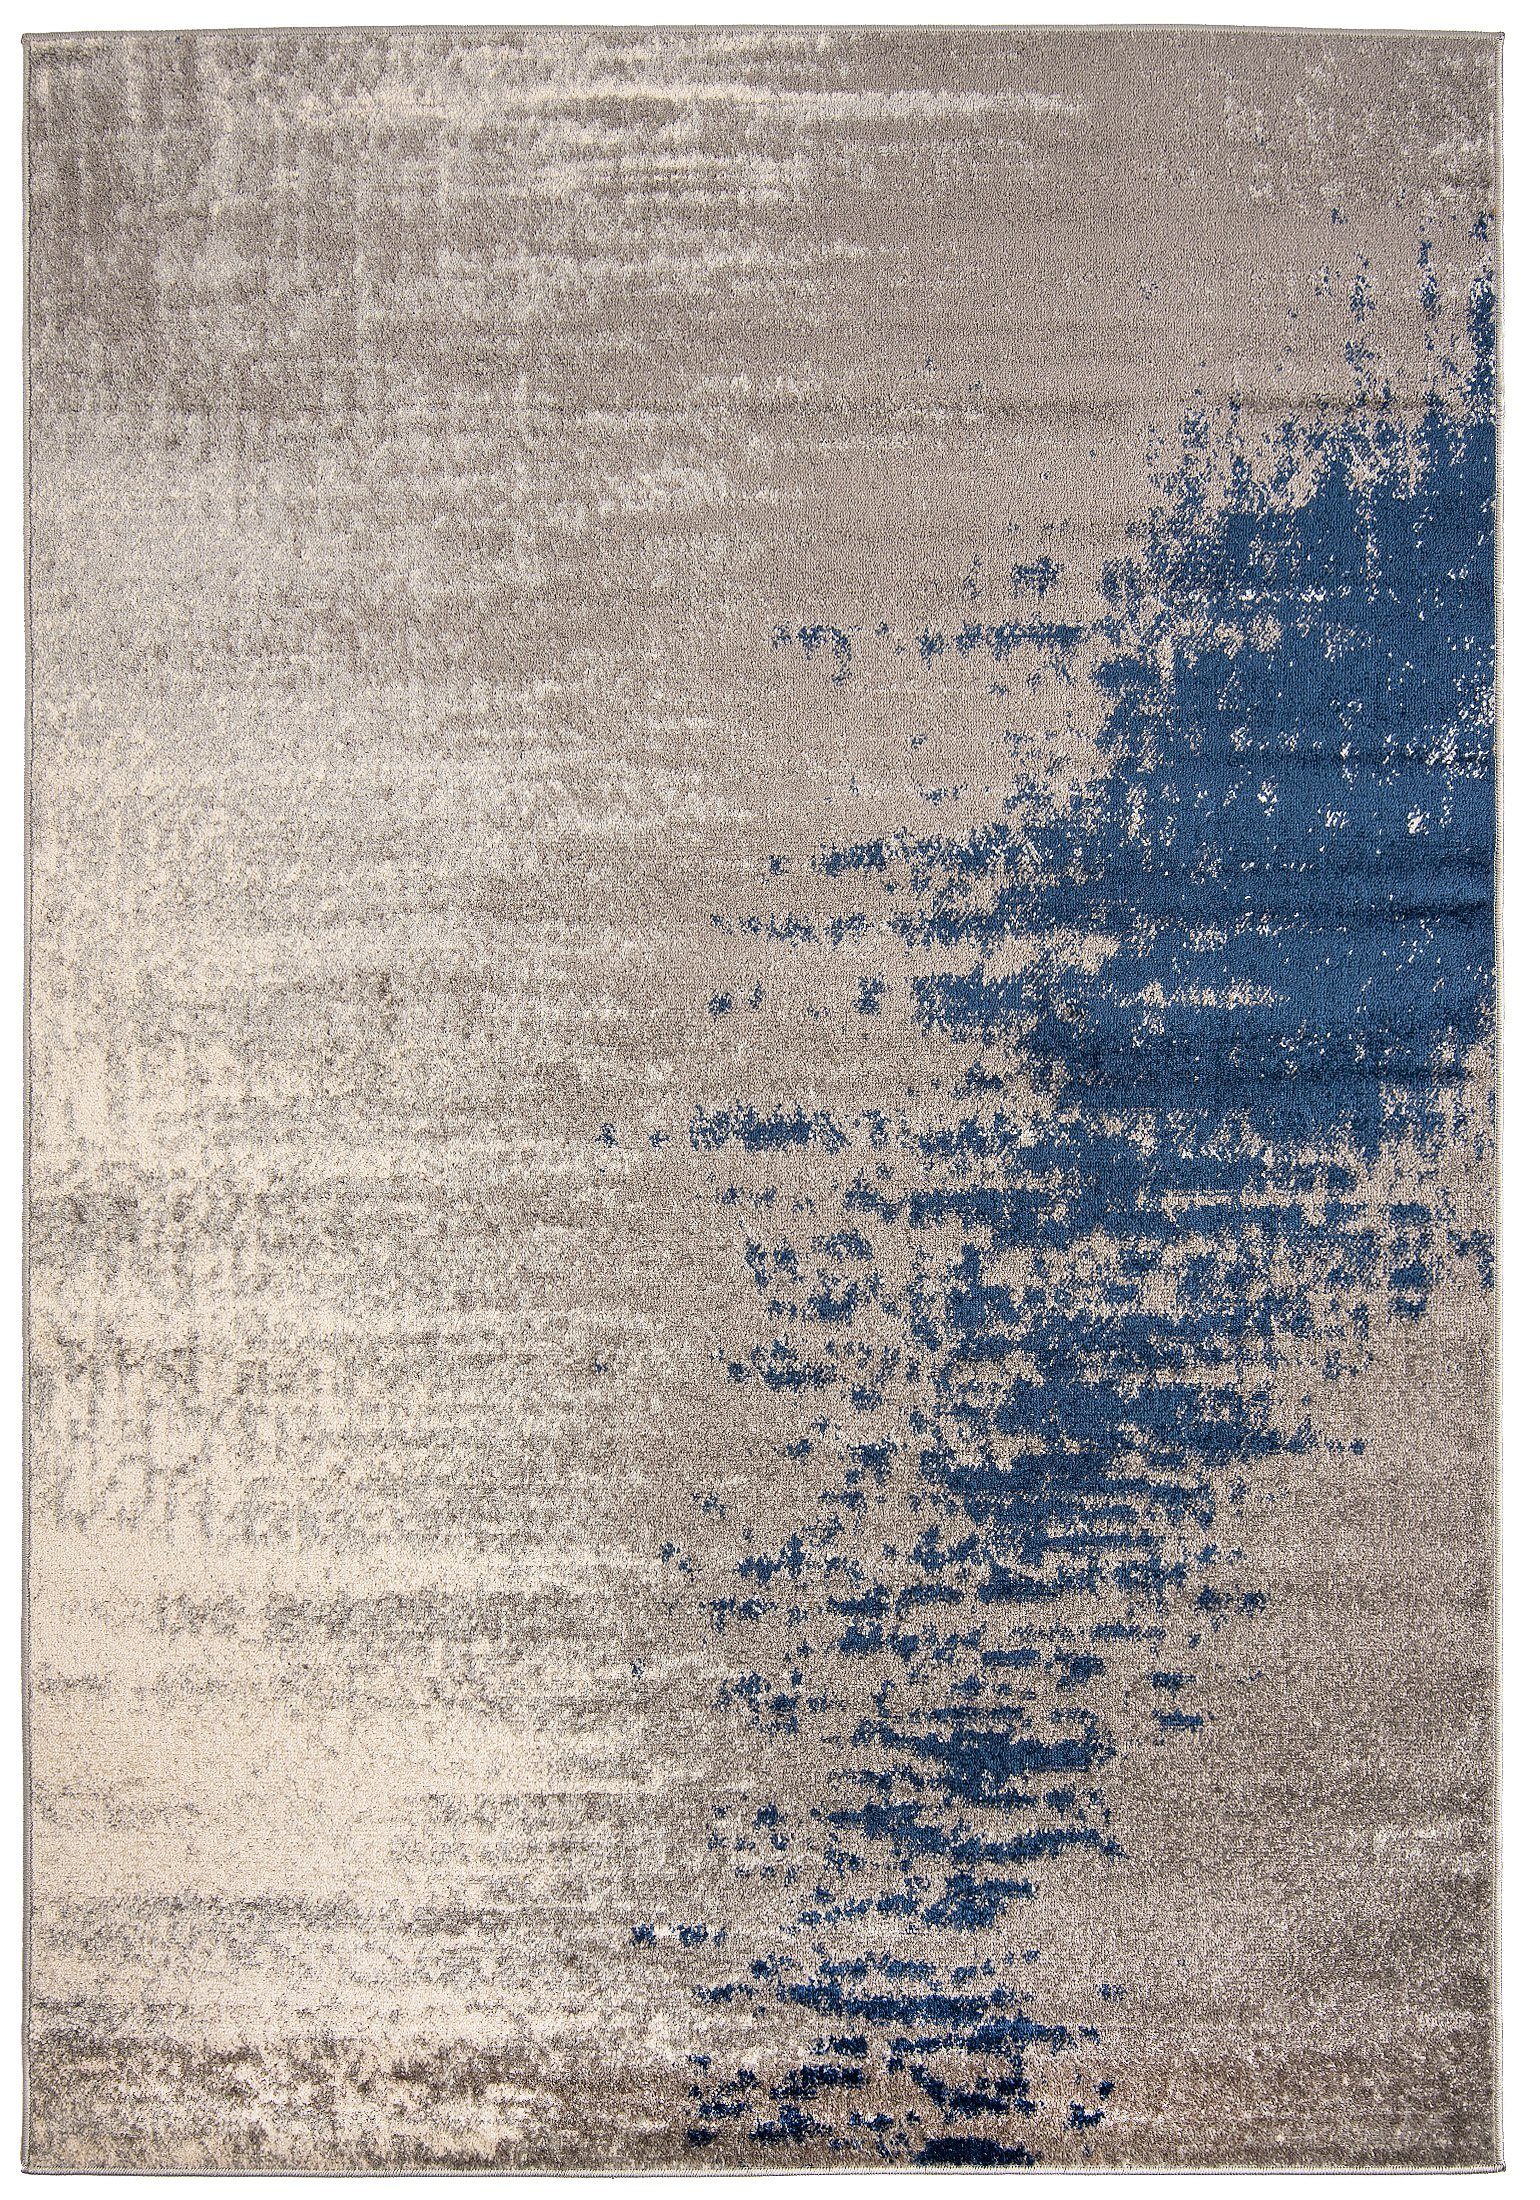 Designteppich Modern Teppich Abstrakt Muster Grau Blau farbe - Kurzflor, Mazovia, 120 x 170 cm, Geeignet für Fußbodenheizung, Höhe 7 mm, Kurzflor | Alle Teppiche